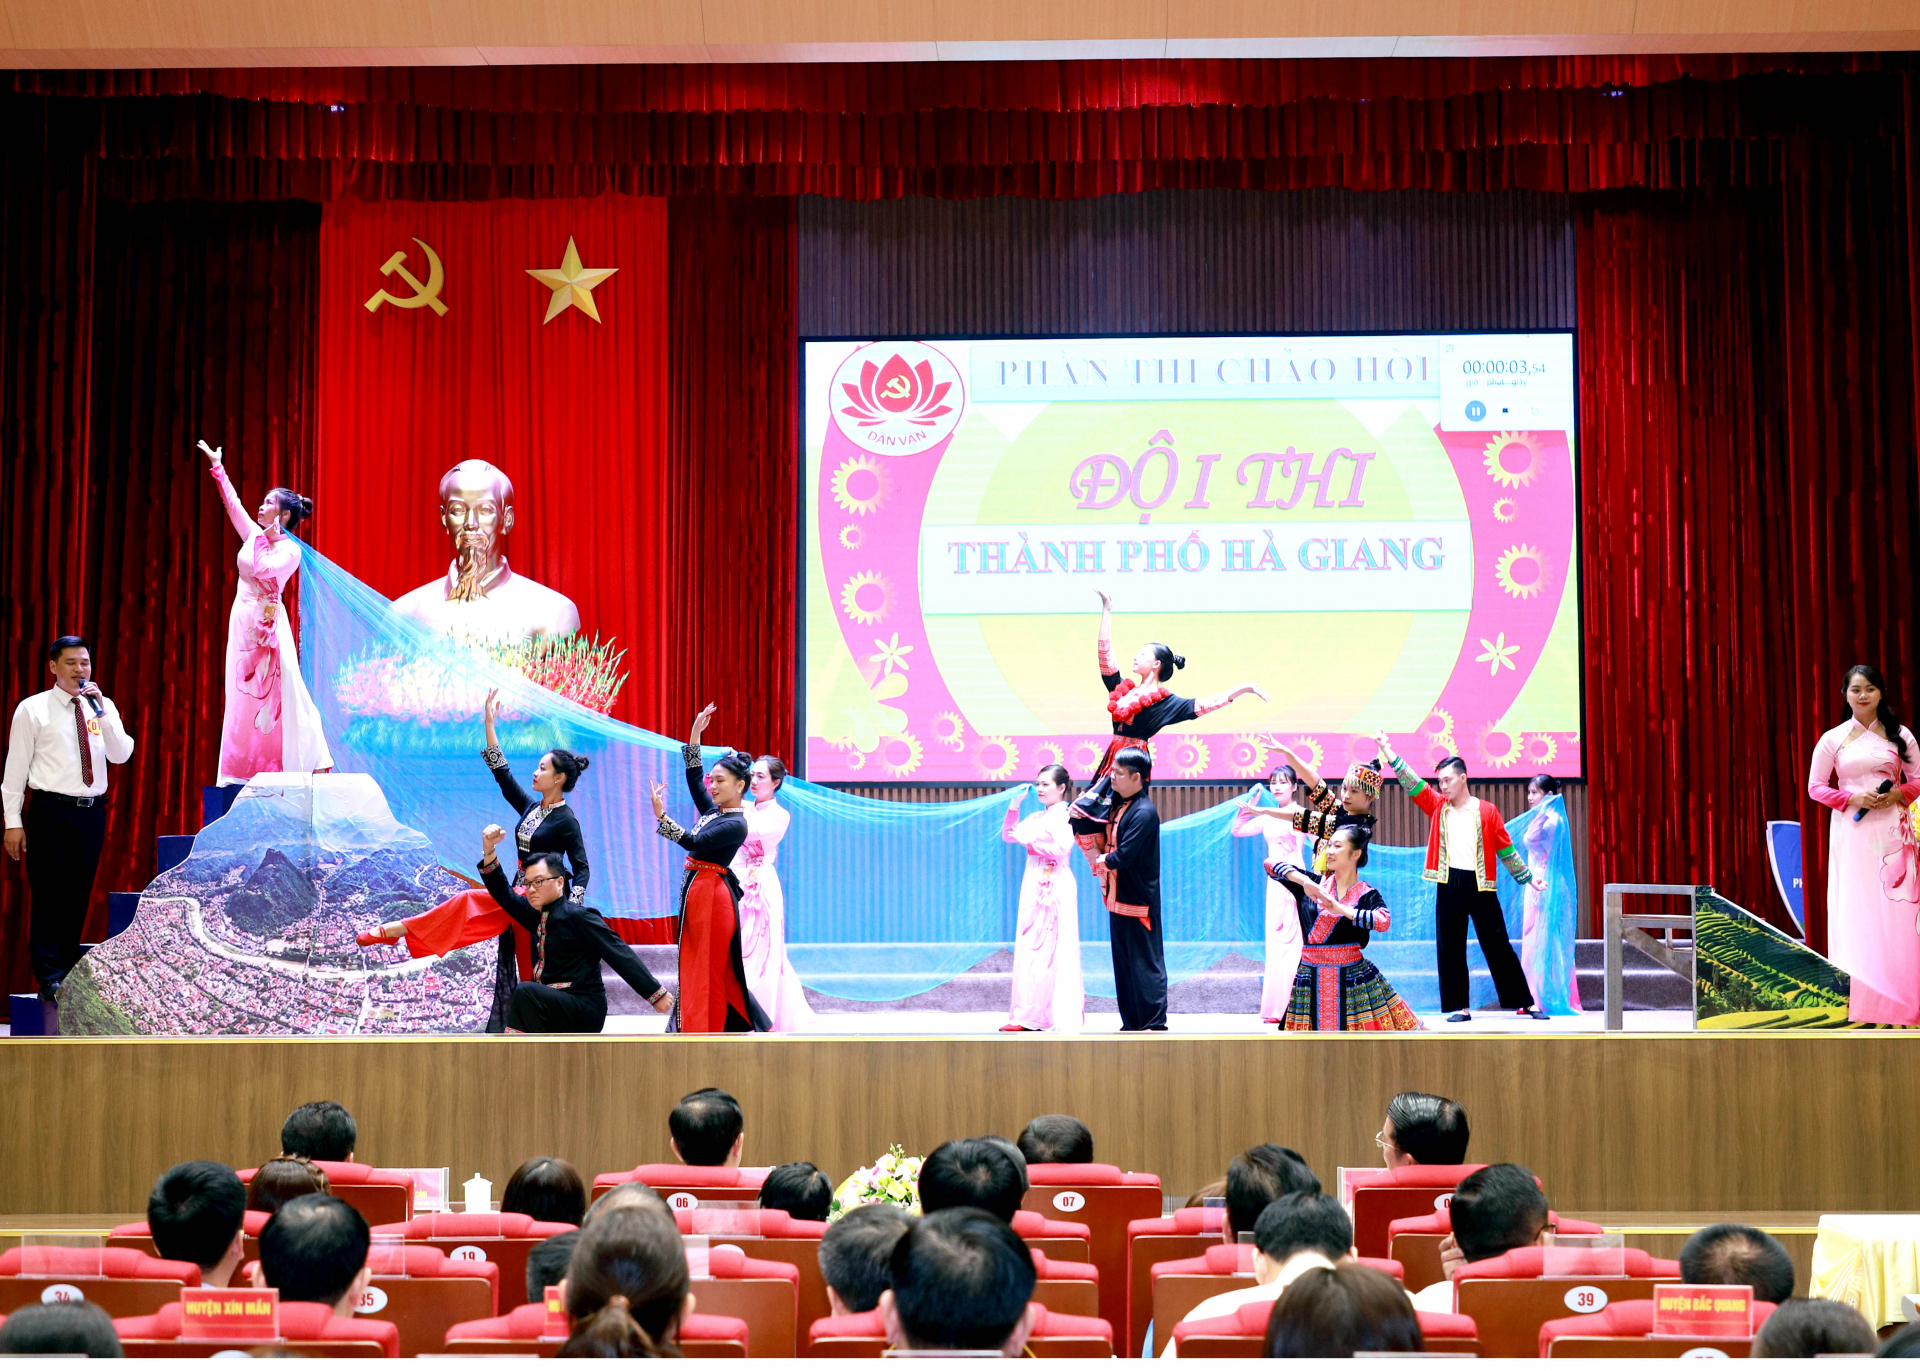 Màn thi chào hỏi của Đội thành phố Hà Giang.